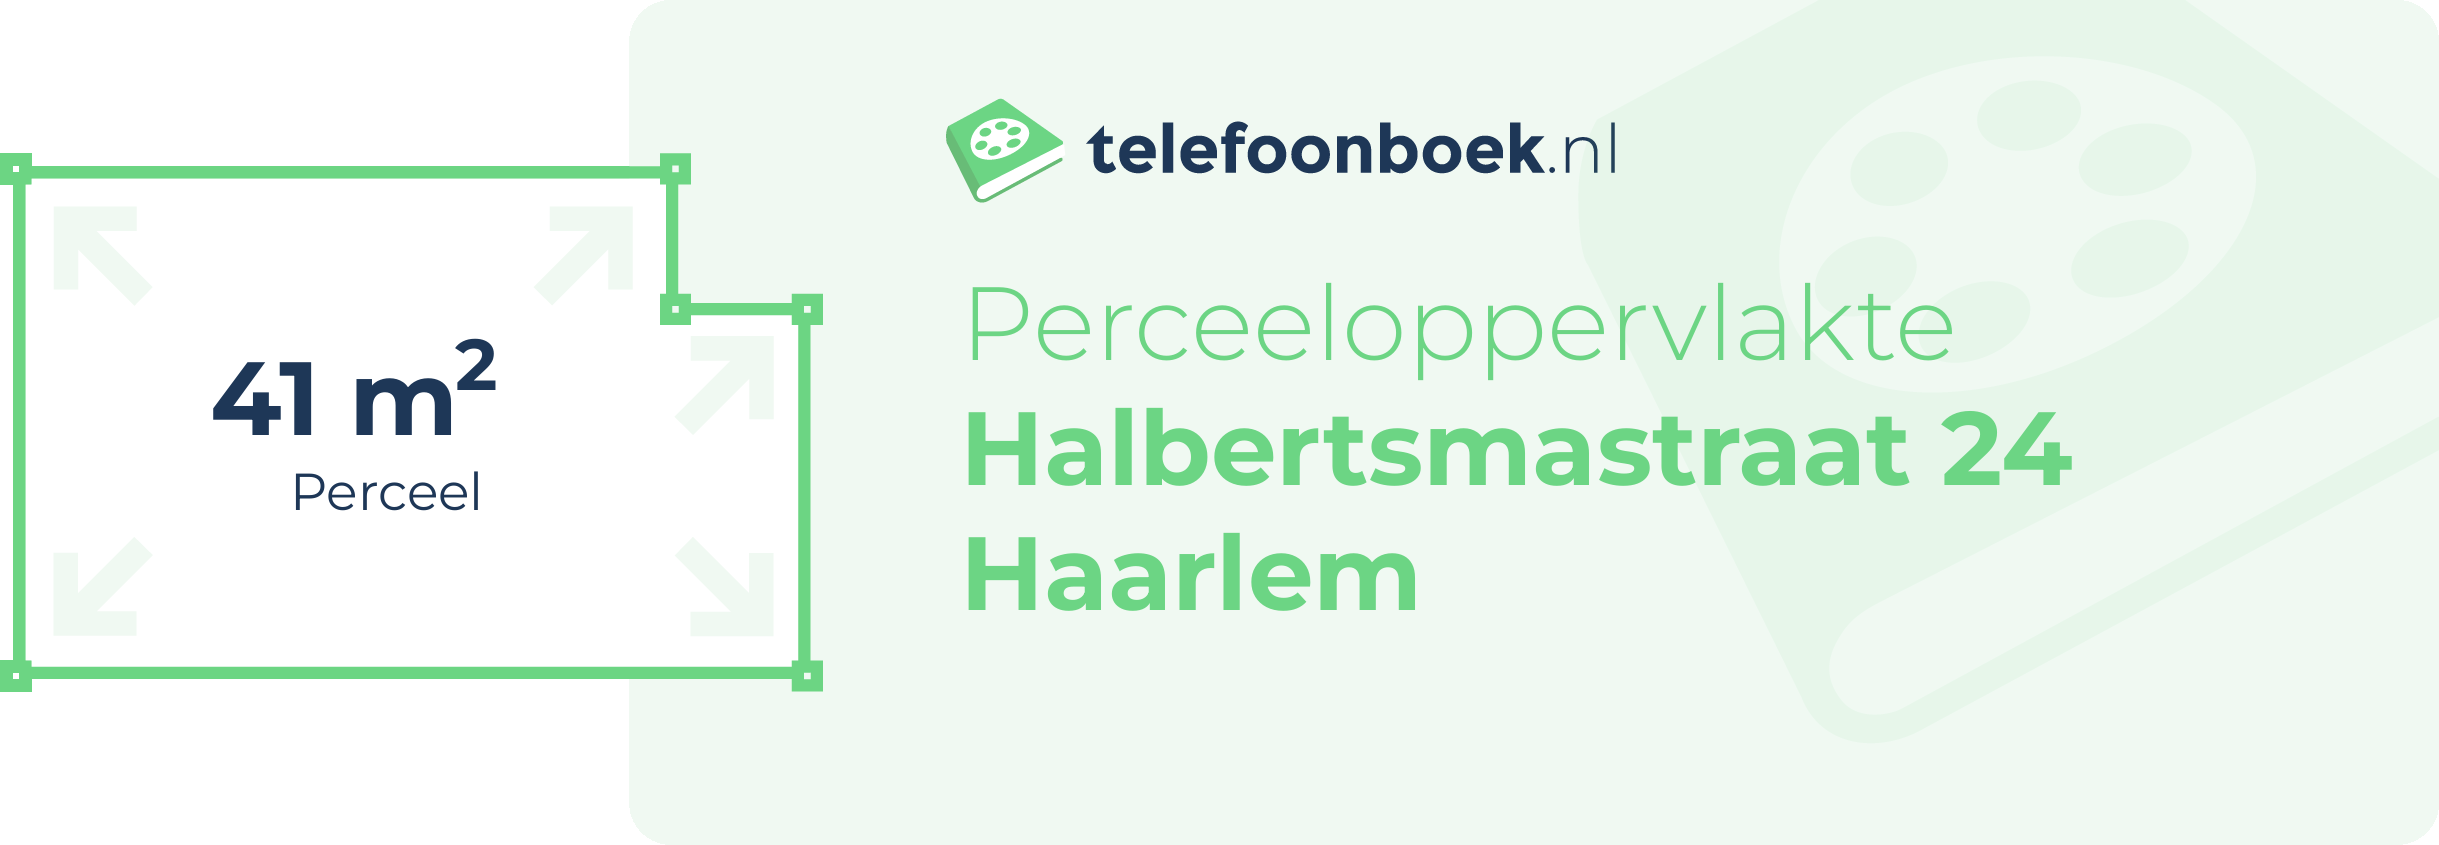 Perceeloppervlakte Halbertsmastraat 24 Haarlem